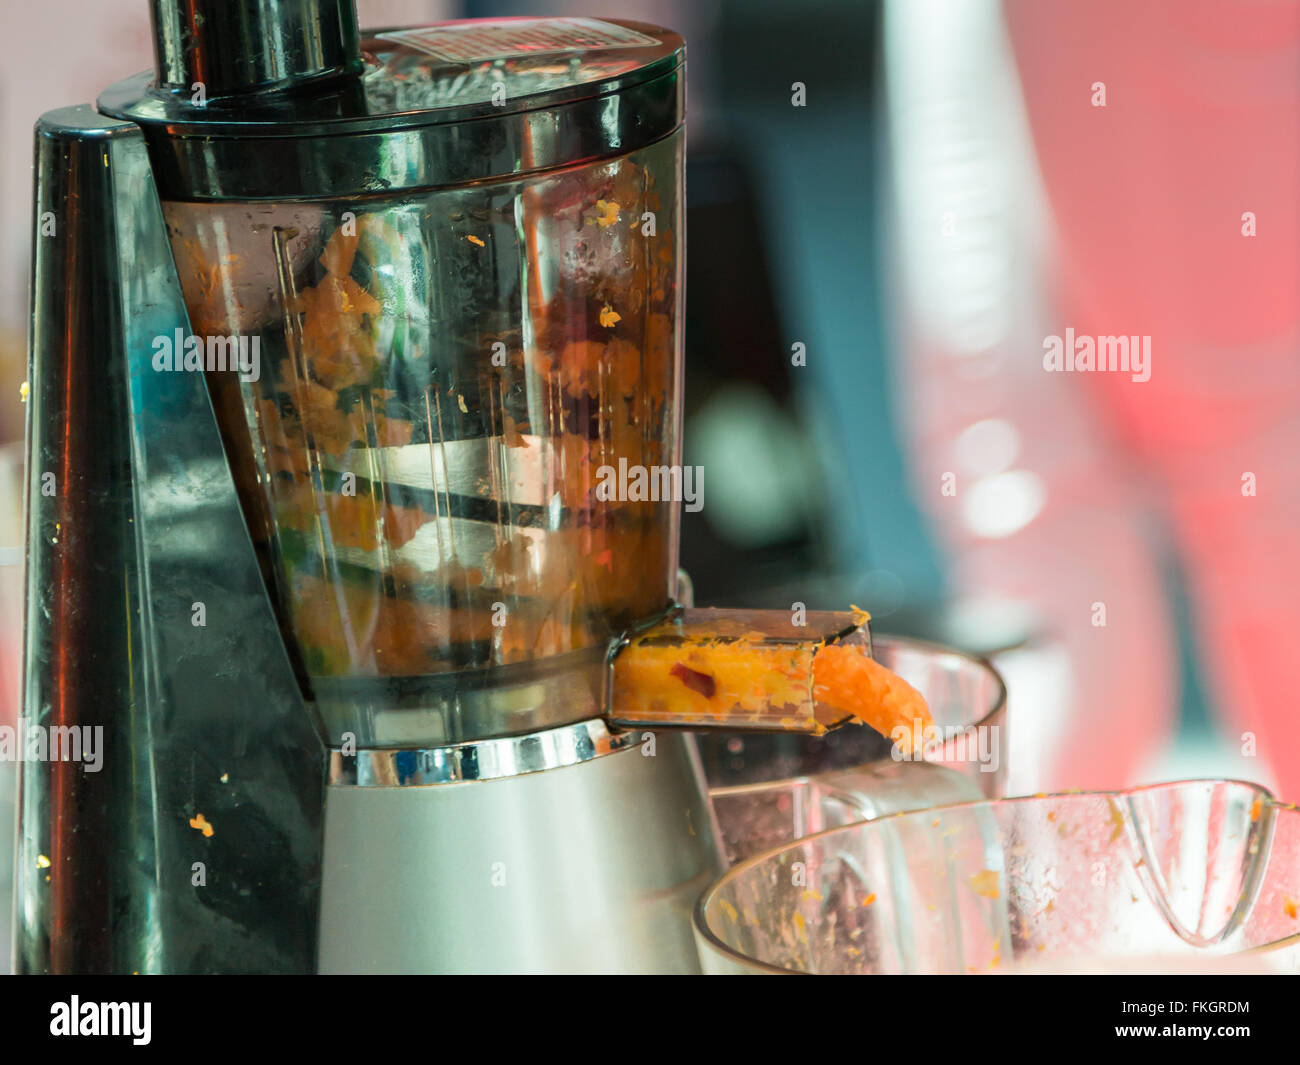 Machine Ou Mixer De Jus D'orange Photo stock - Image du boisson, citron:  55146368